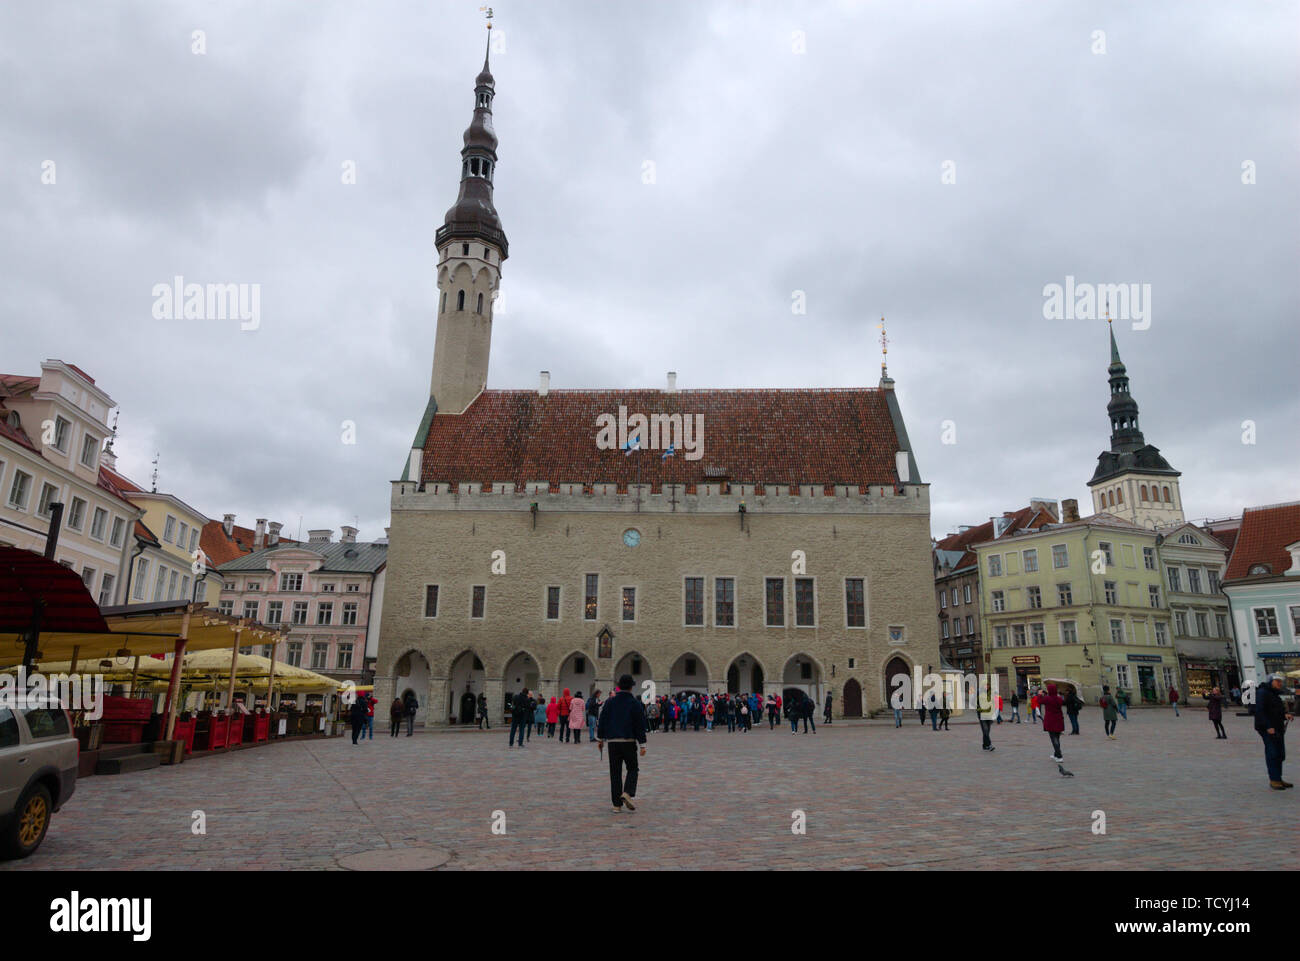 Tallinn Town Hall in the old town of Tallinn, Estonia Stock Photo